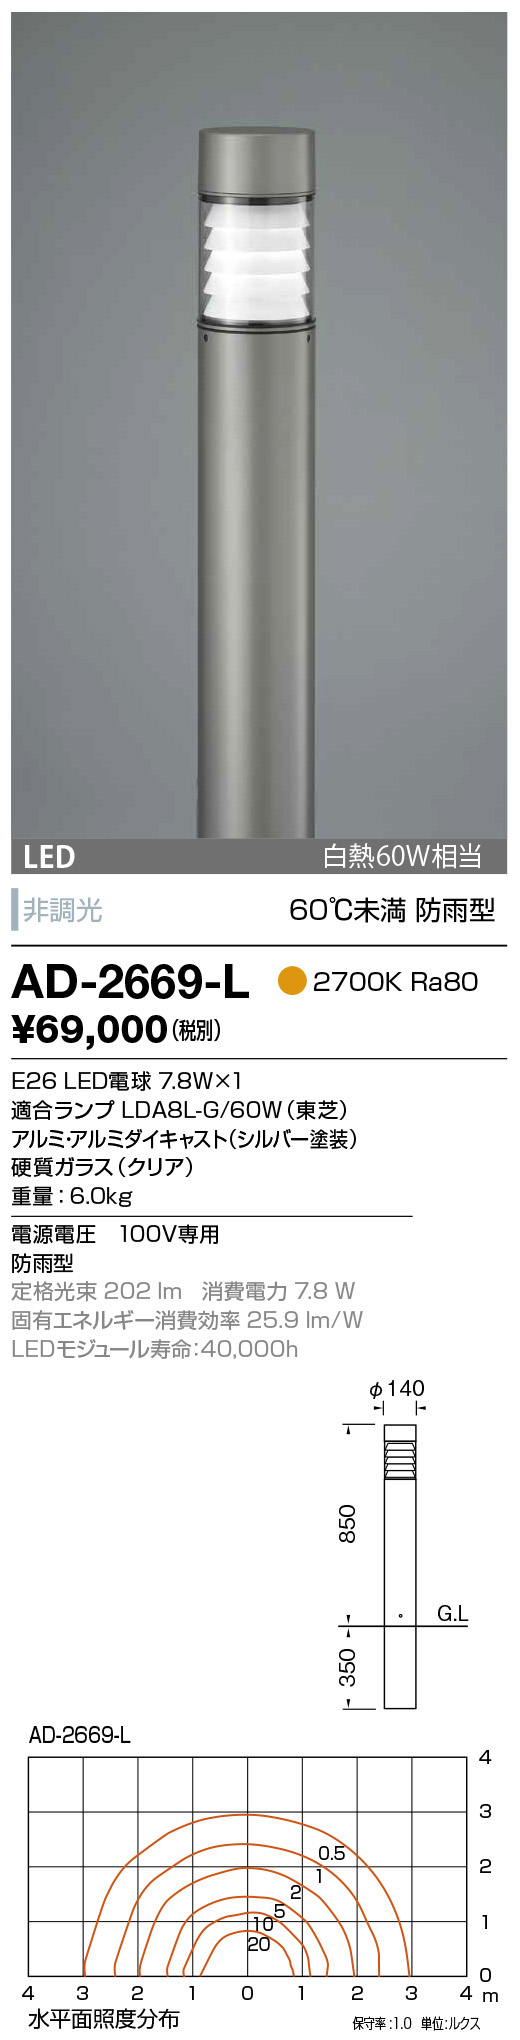 山田照明 エクステリア LEDガーデンライト 防雨 白熱60W相当 非調光 シルバー 2700K 電球色:AD-2669-L - 2